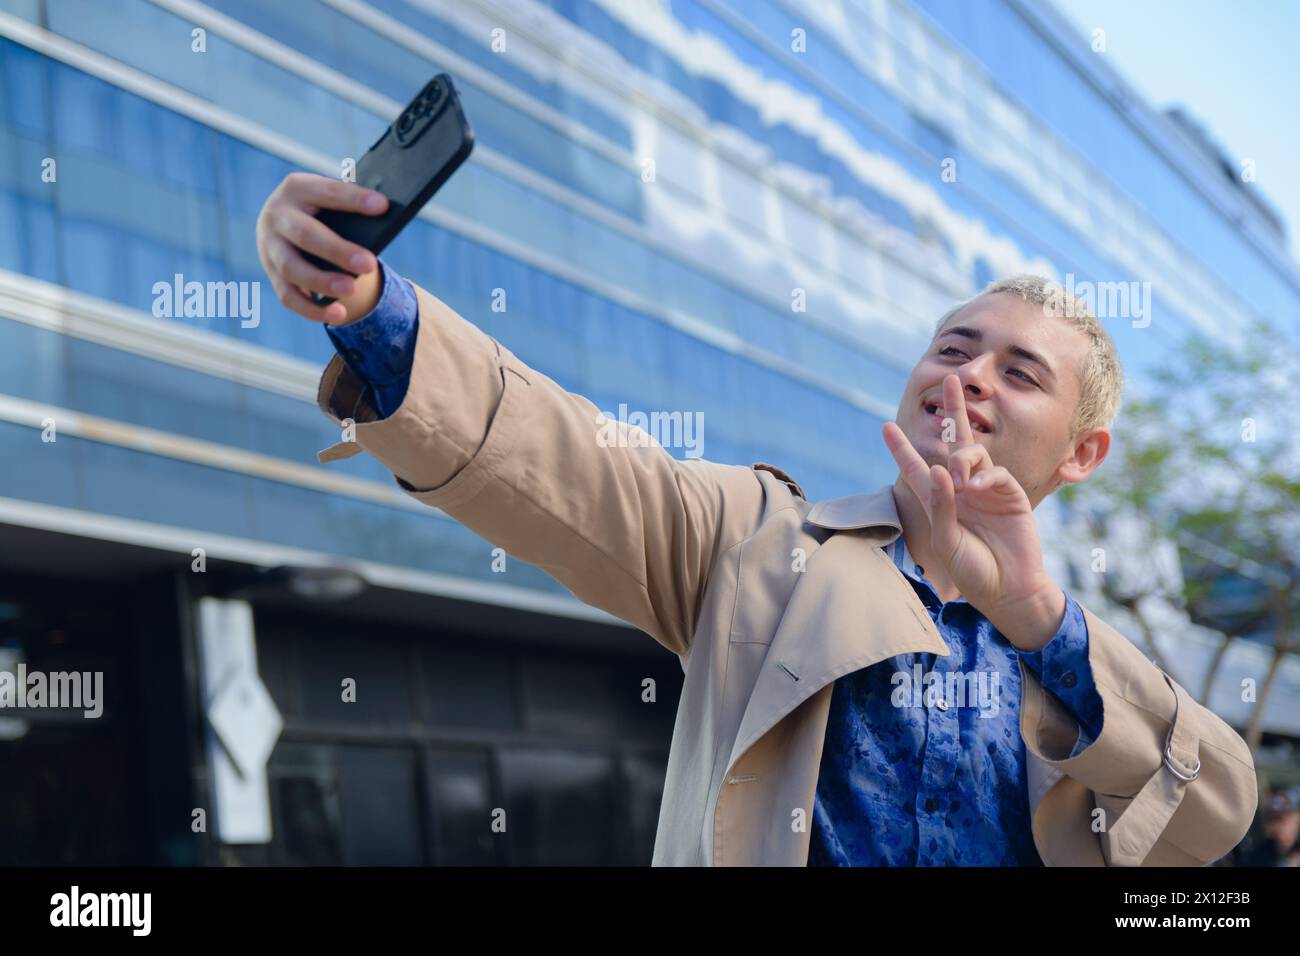 Junger lateinamerikanischer argentinischer Mann, hübscher blonder Unternehmer in formeller Kleidung, der im Freien Selfie-Foto mit seinem Handy macht Stockfoto